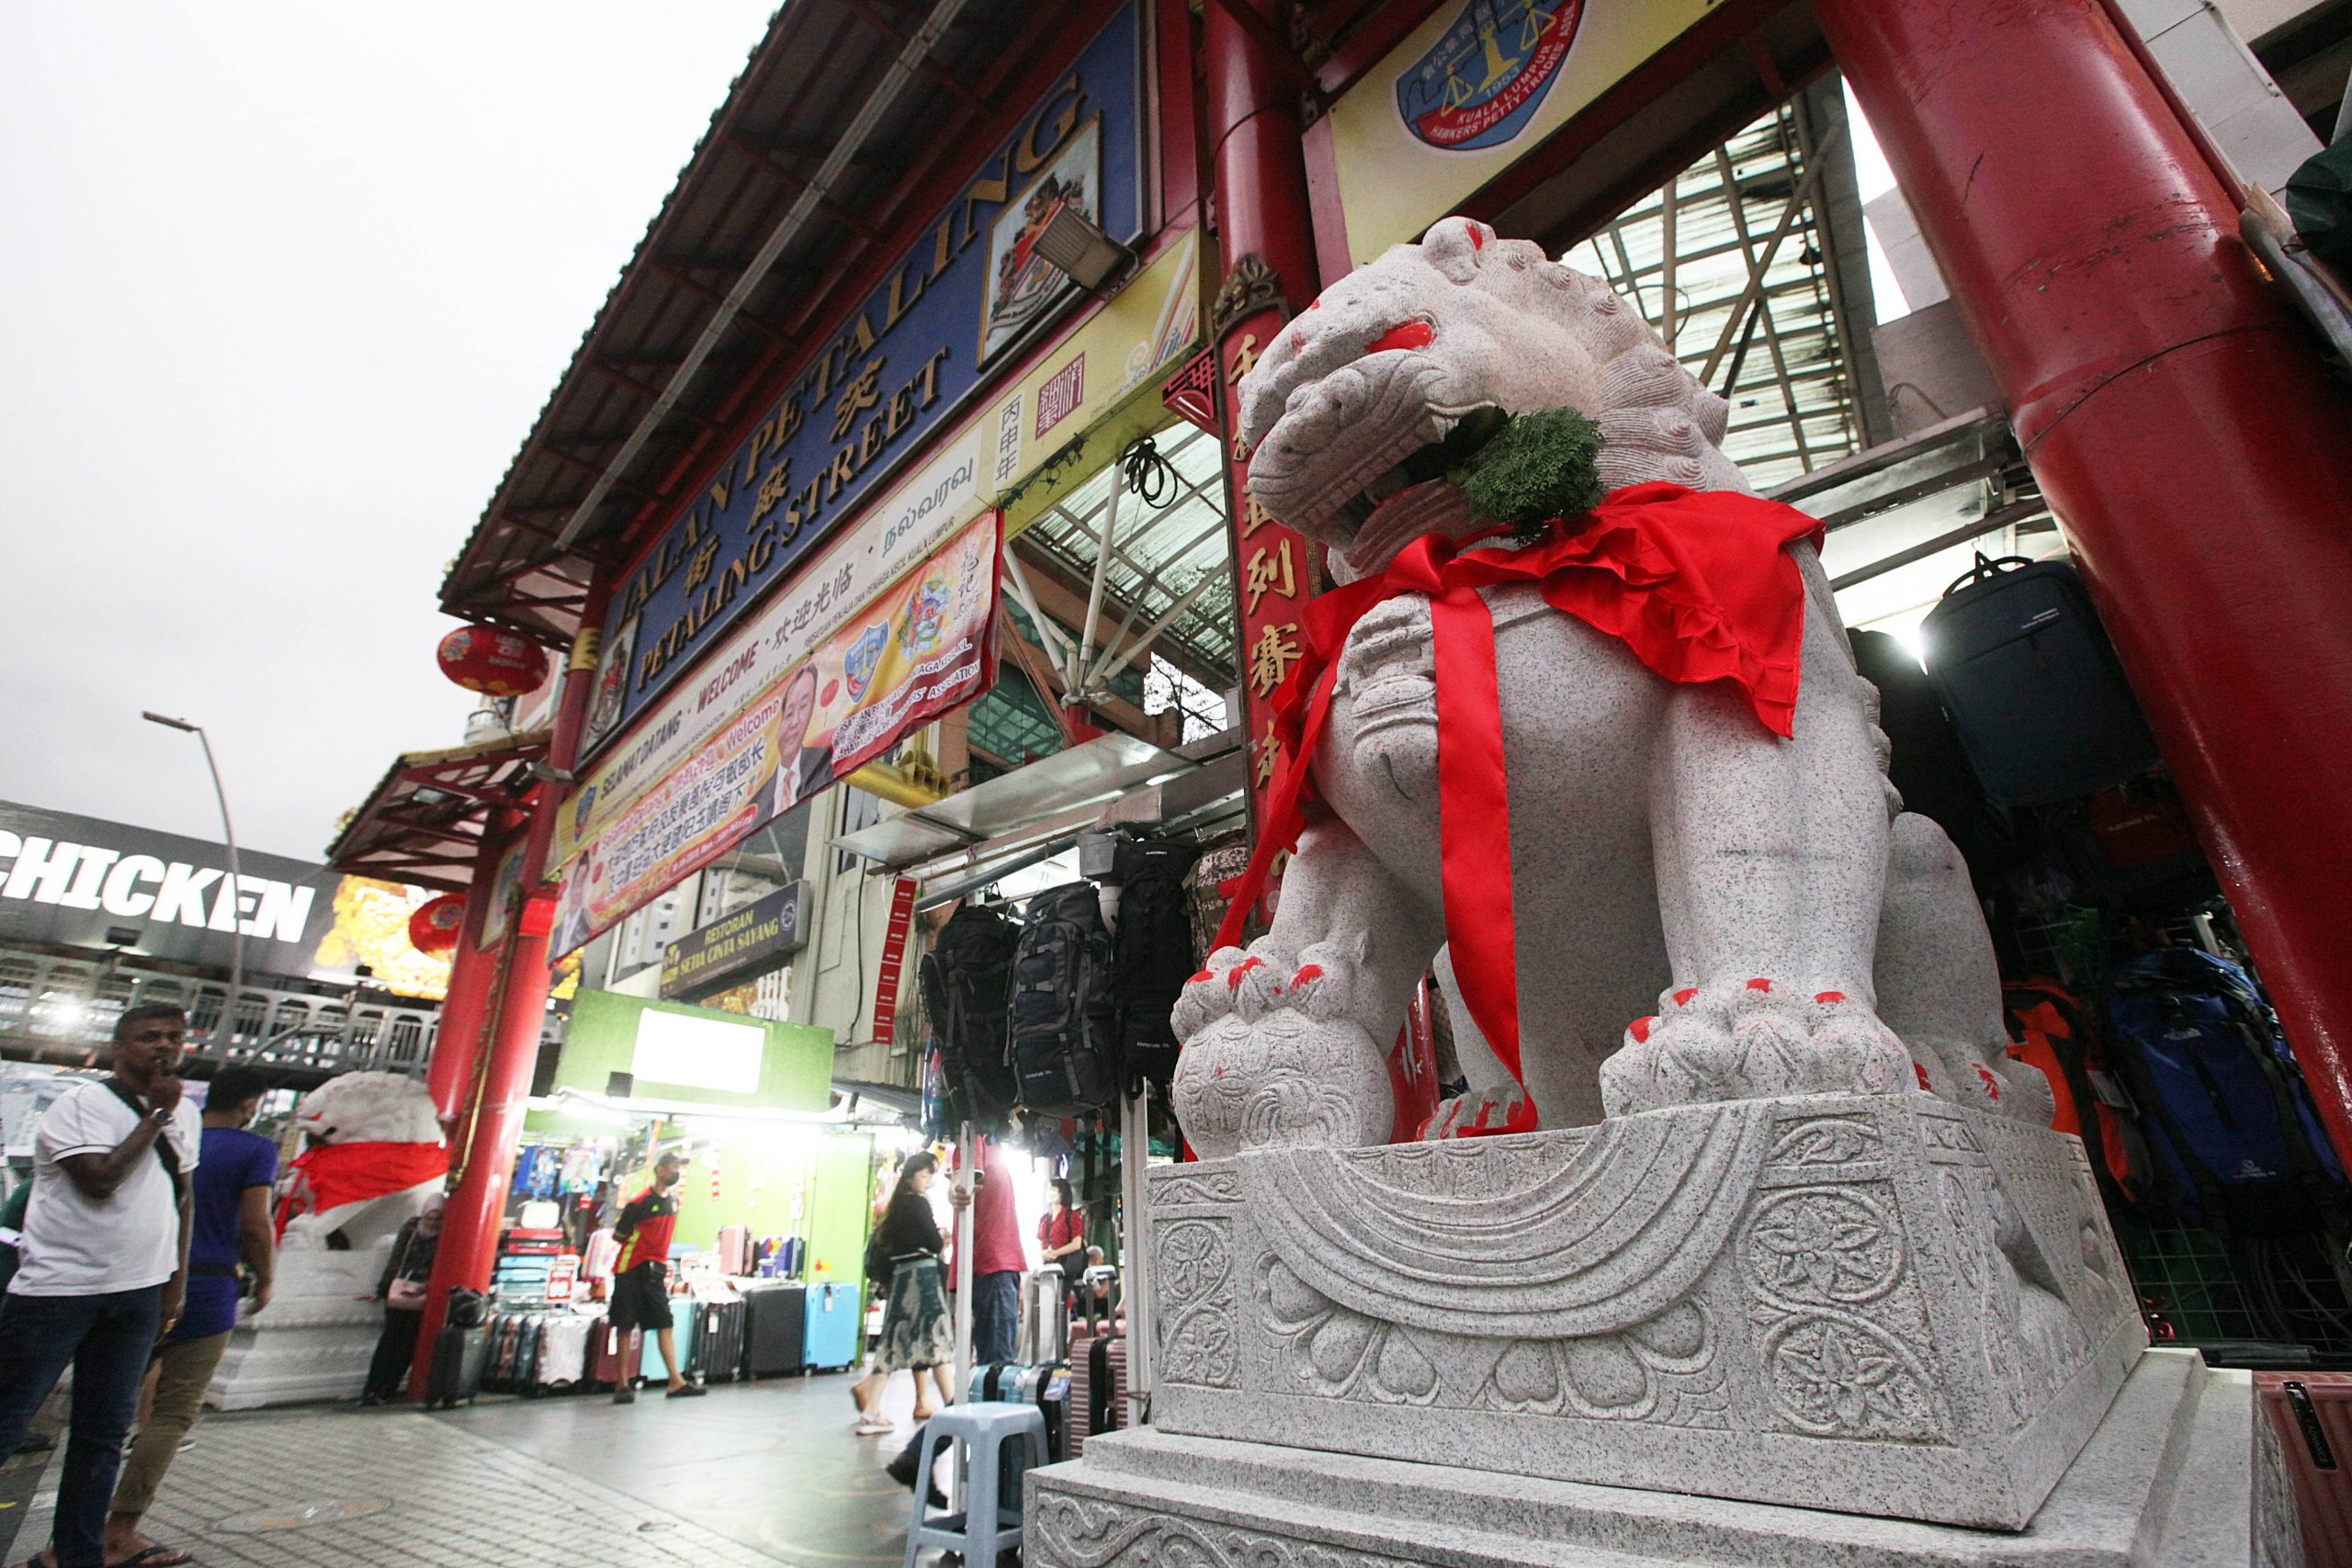 中国赠大马石雕瑞狮  坐镇茨厂街添祥瑞